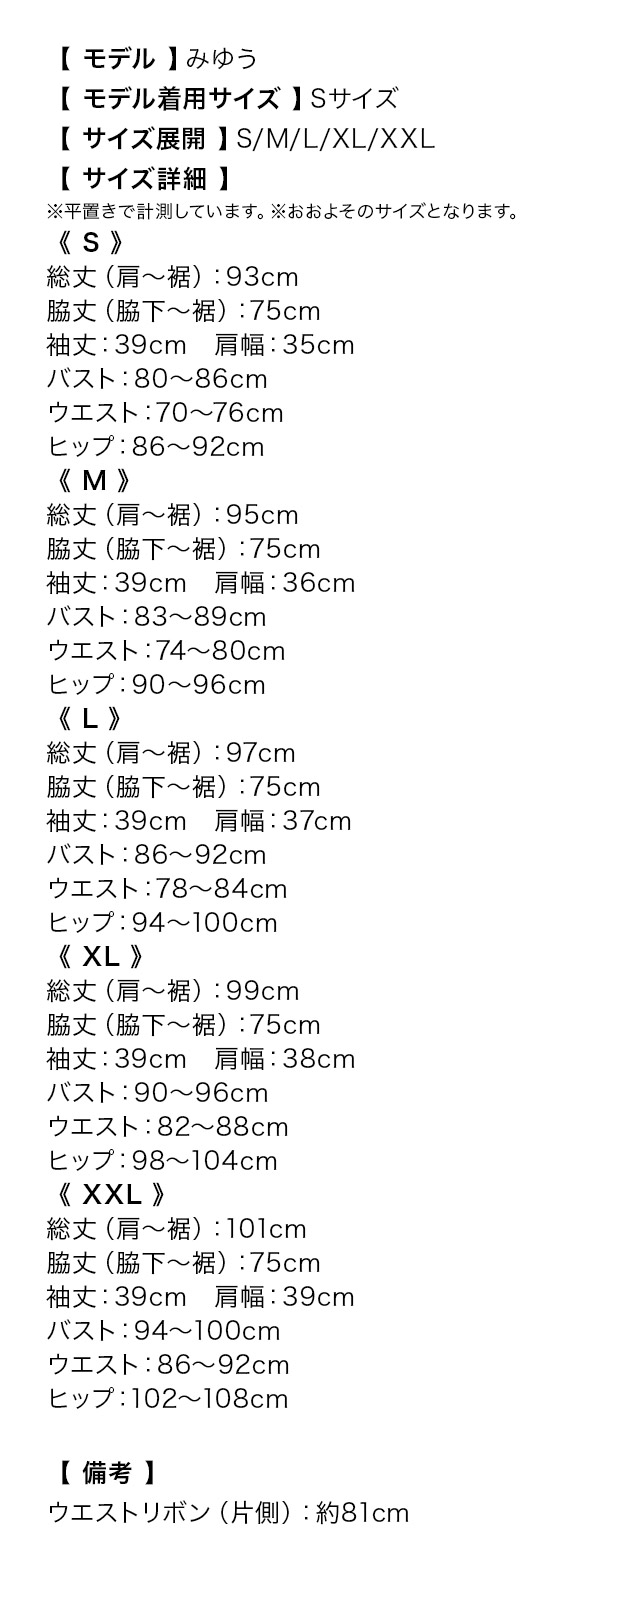 フラワーヌーディー総レースウエストリボンミディアムドレスのサイズ表